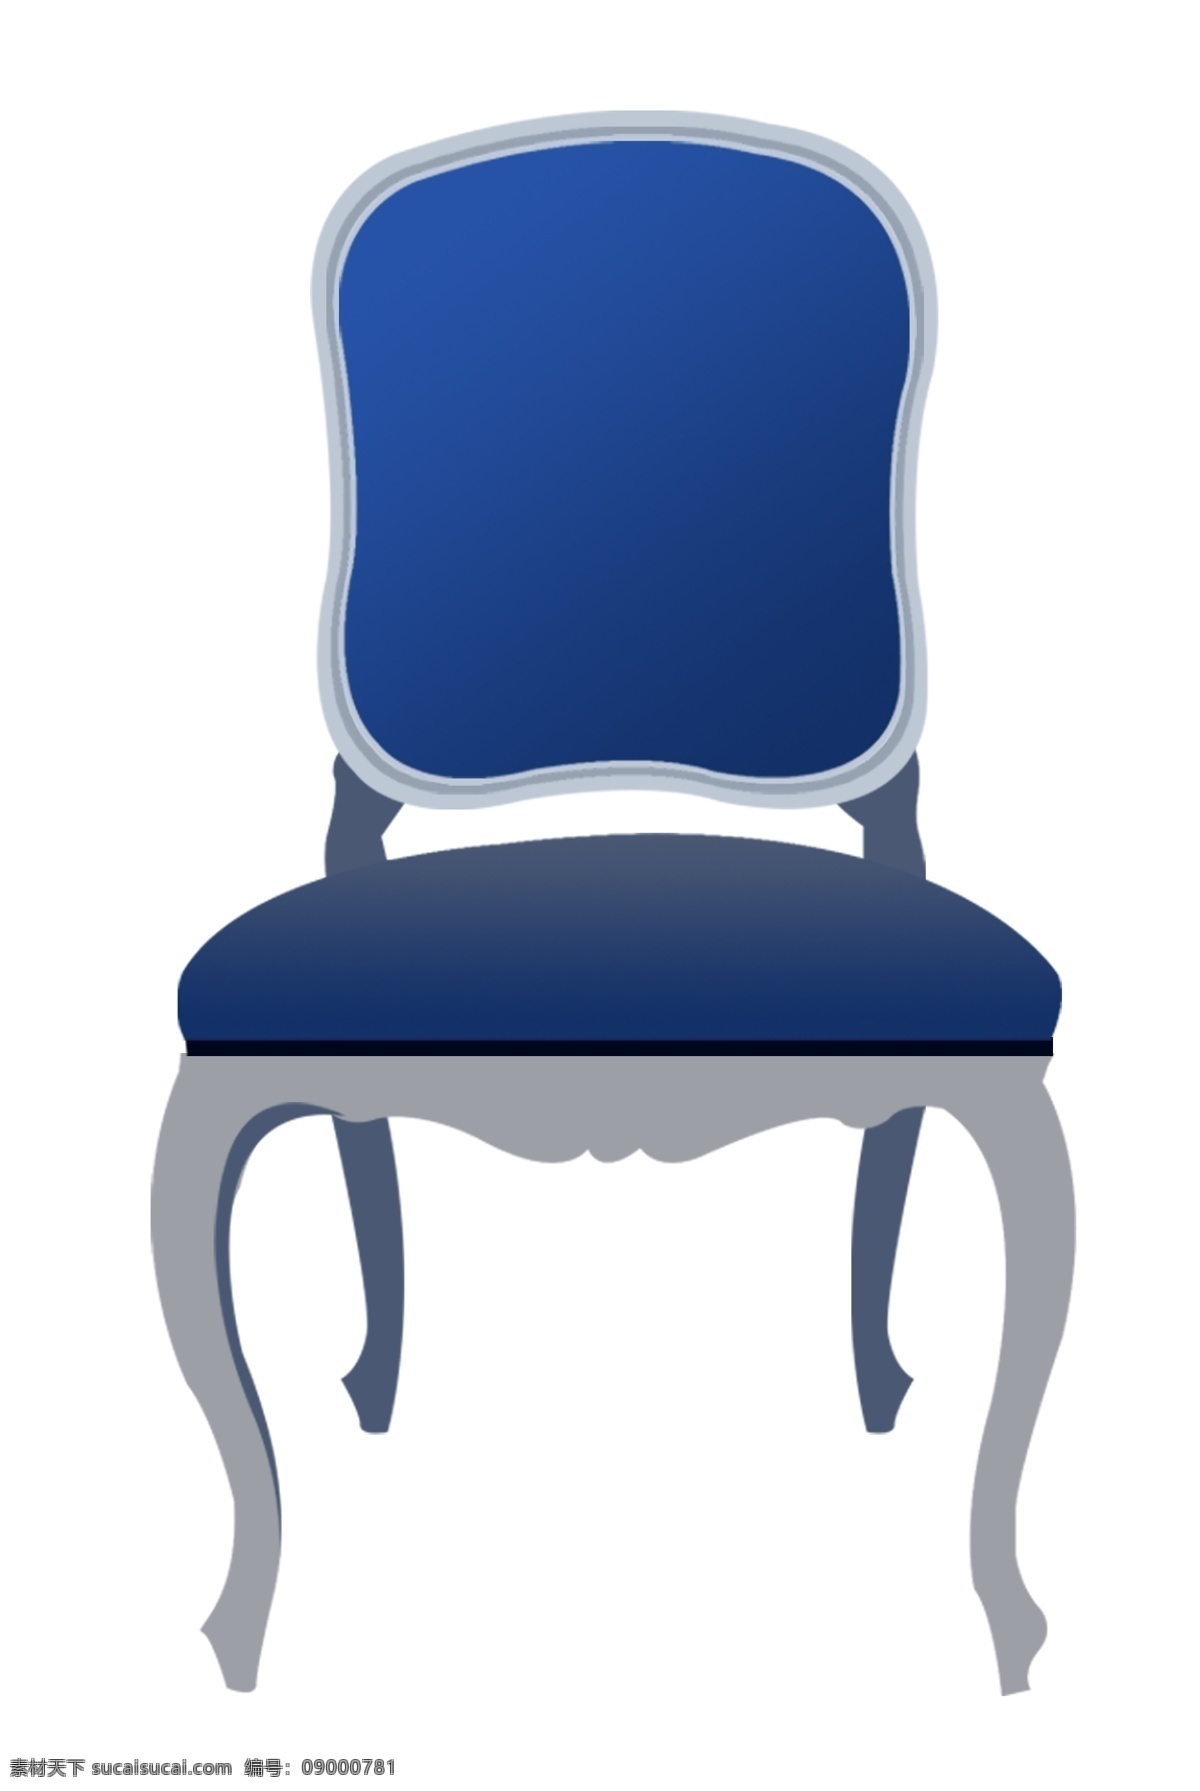 蓝色 餐椅 靠背 椅子 蓝色椅子 简易椅子 靠背椅子 家具 办公椅子 办公室 蓝色椅子插图